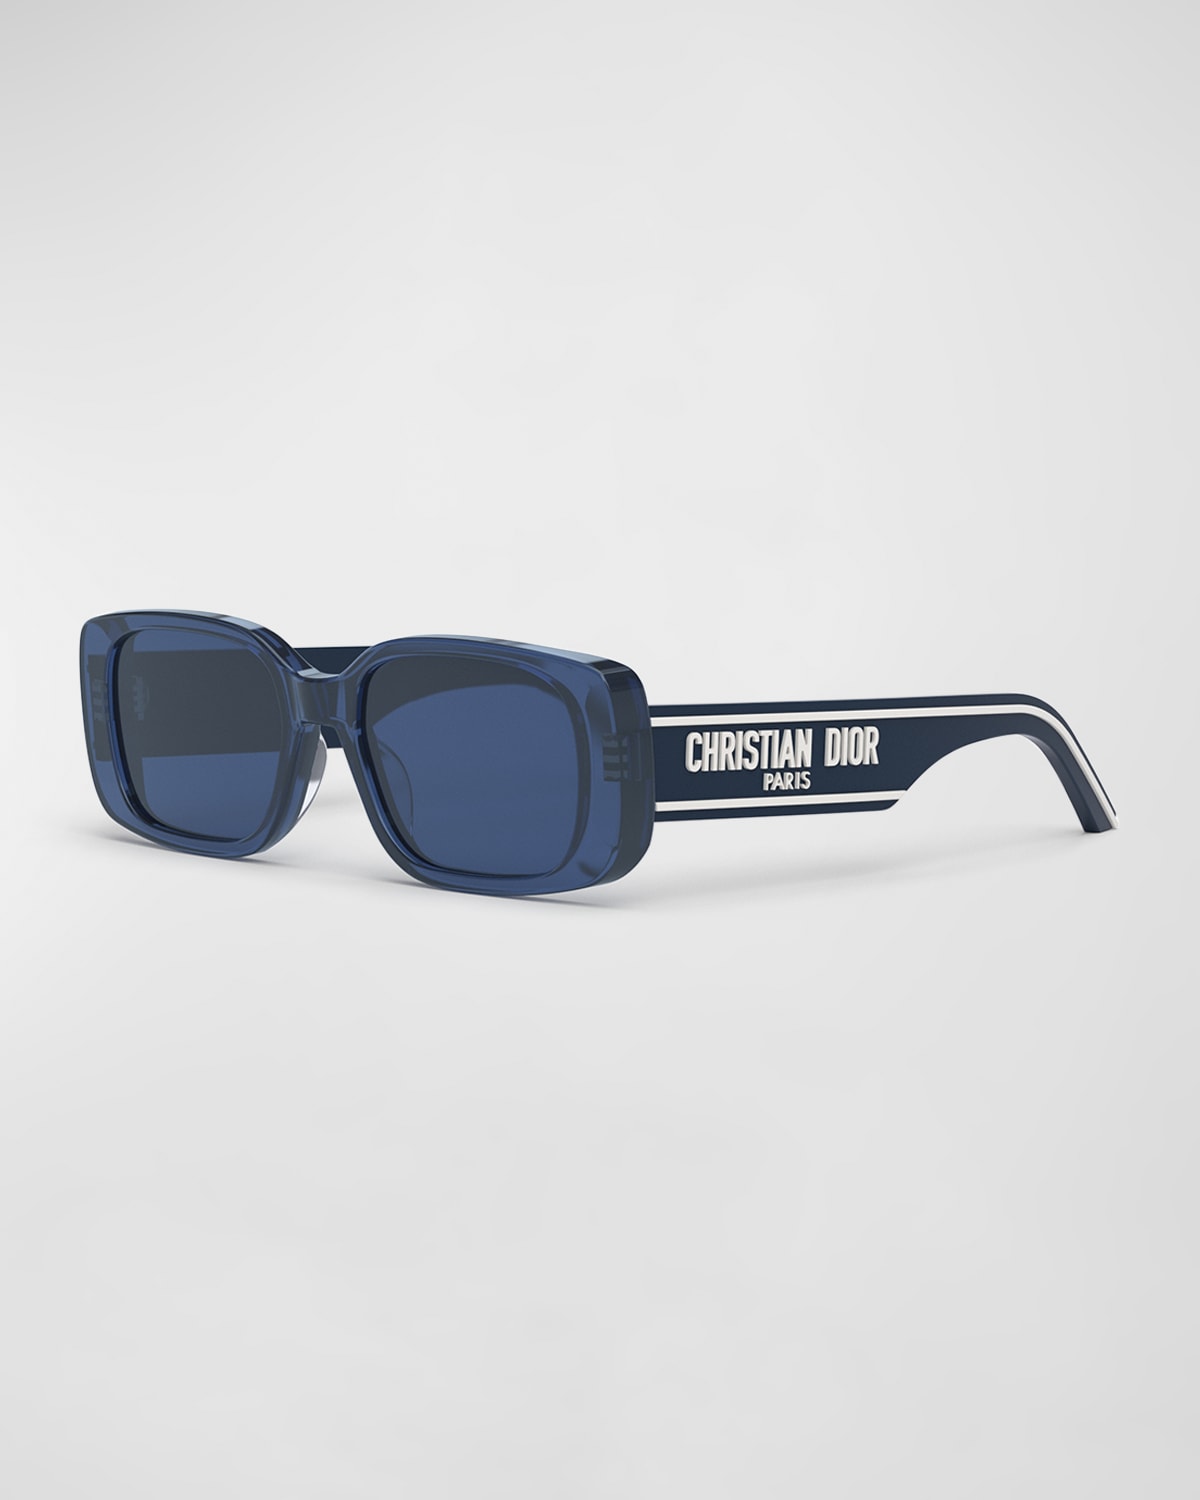 Wildior S2U Sunglasses